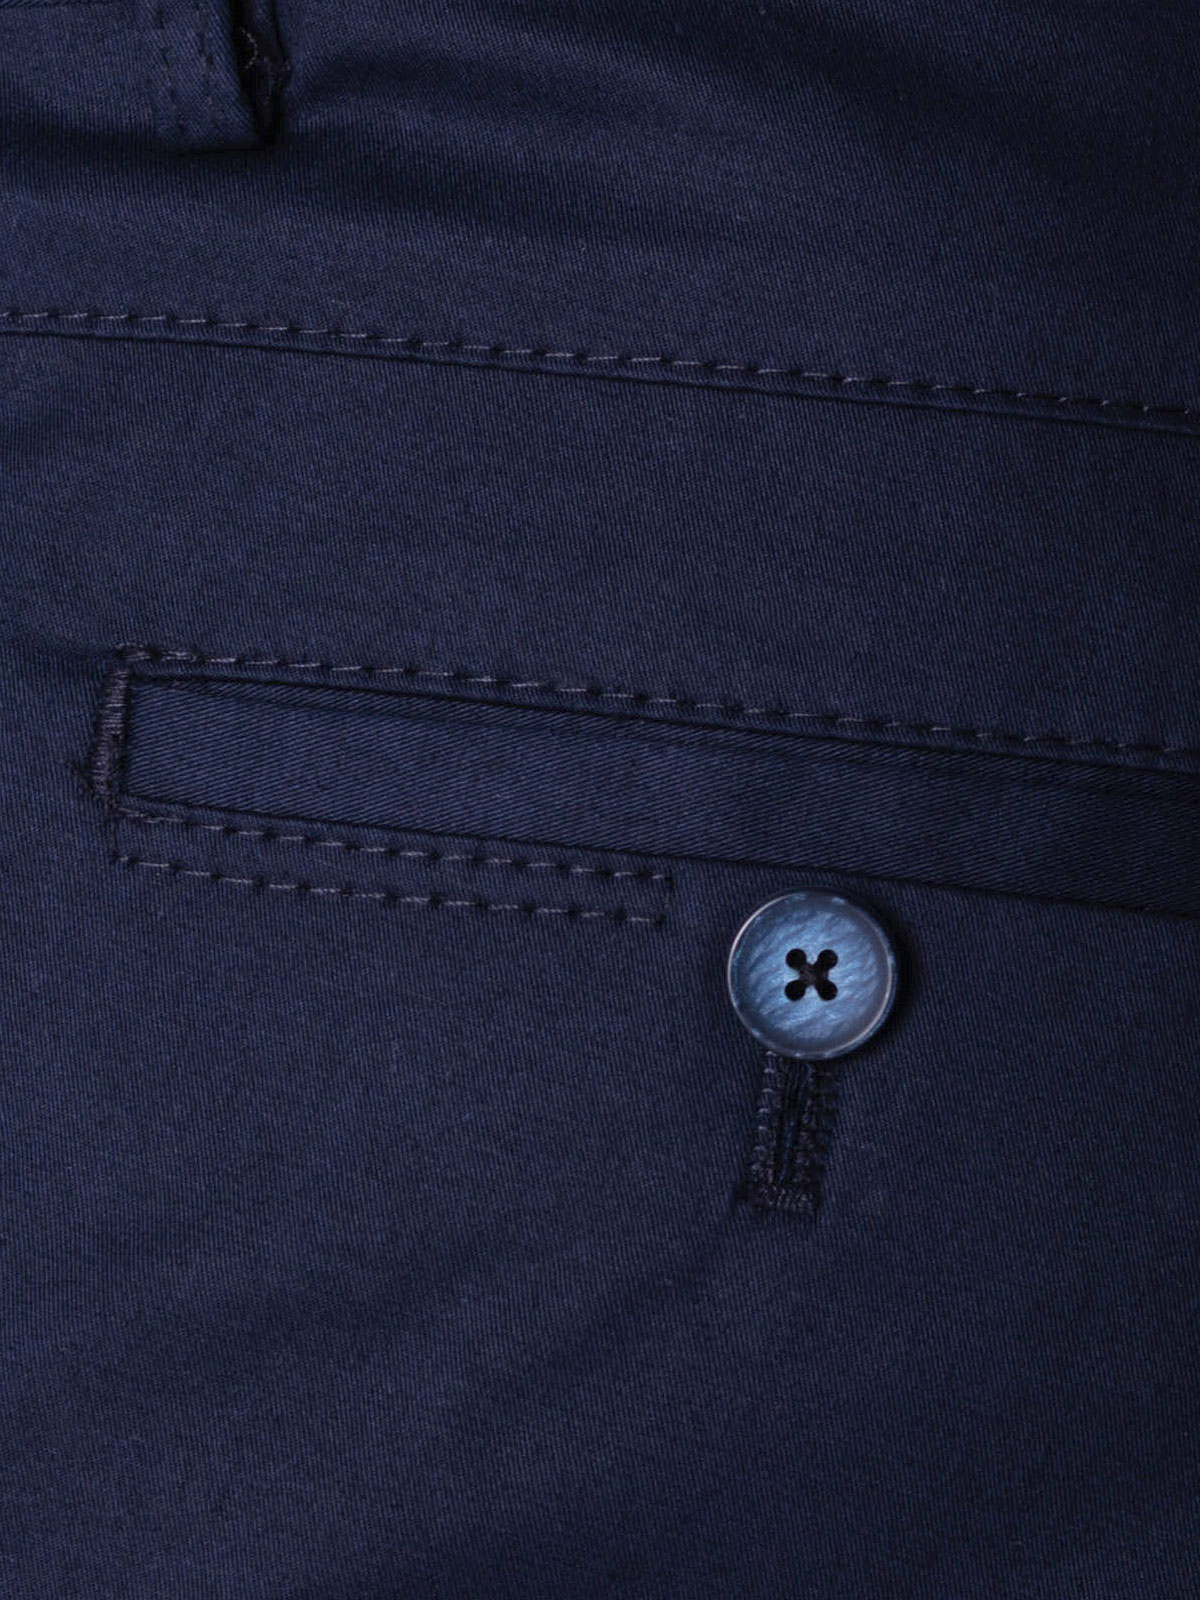 Σπορ κομψό παντελόνι σε μπλε χρώμα - 60287 € 53.43 img4